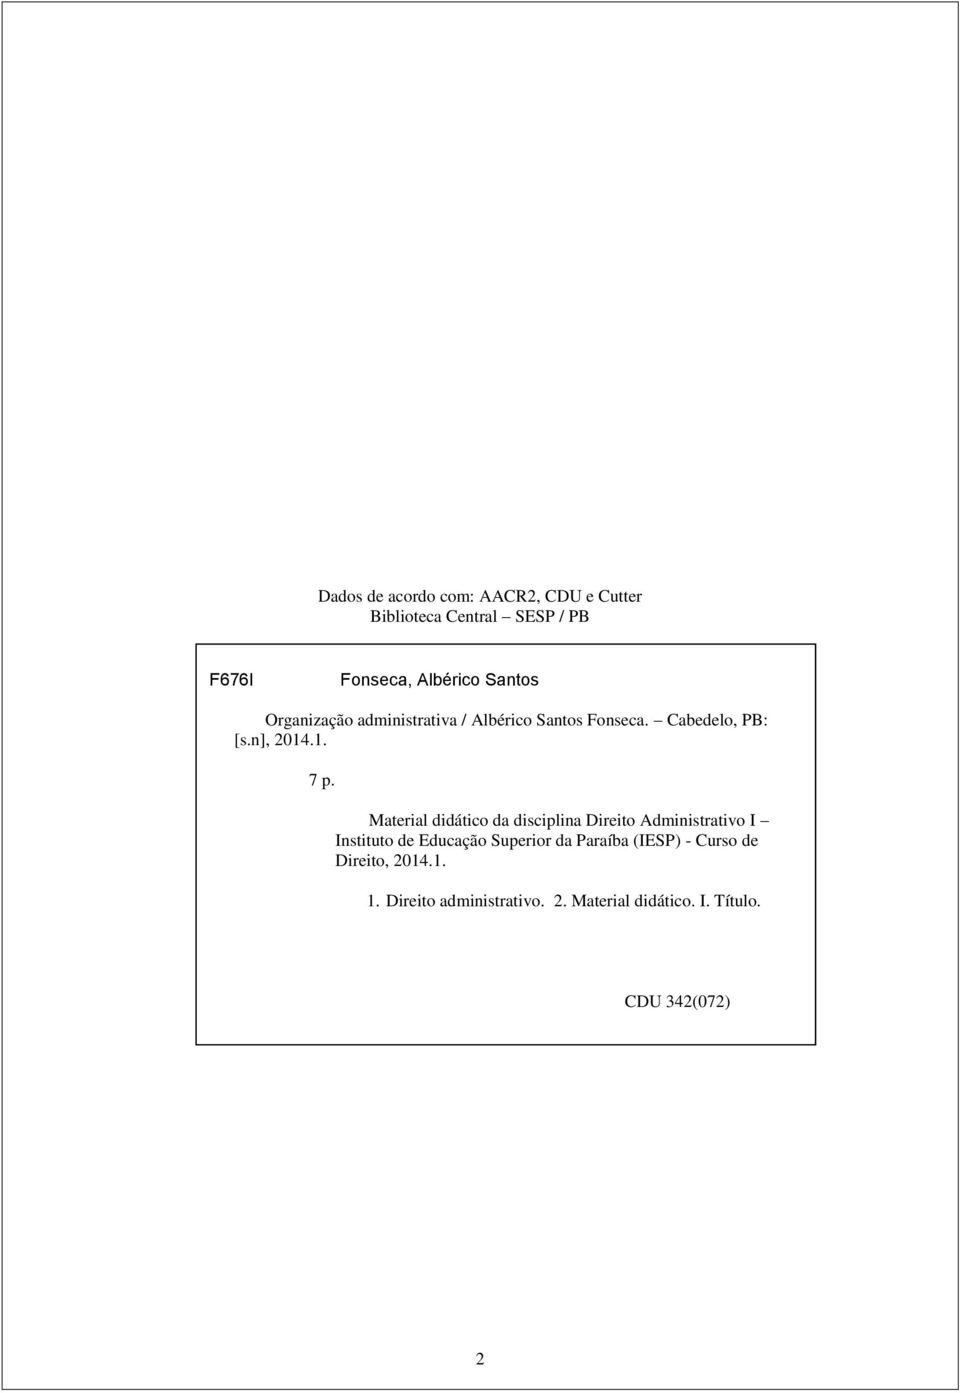 Material didático da disciplina Direito Administrativo I Instituto de Educação Superior da Paraíba